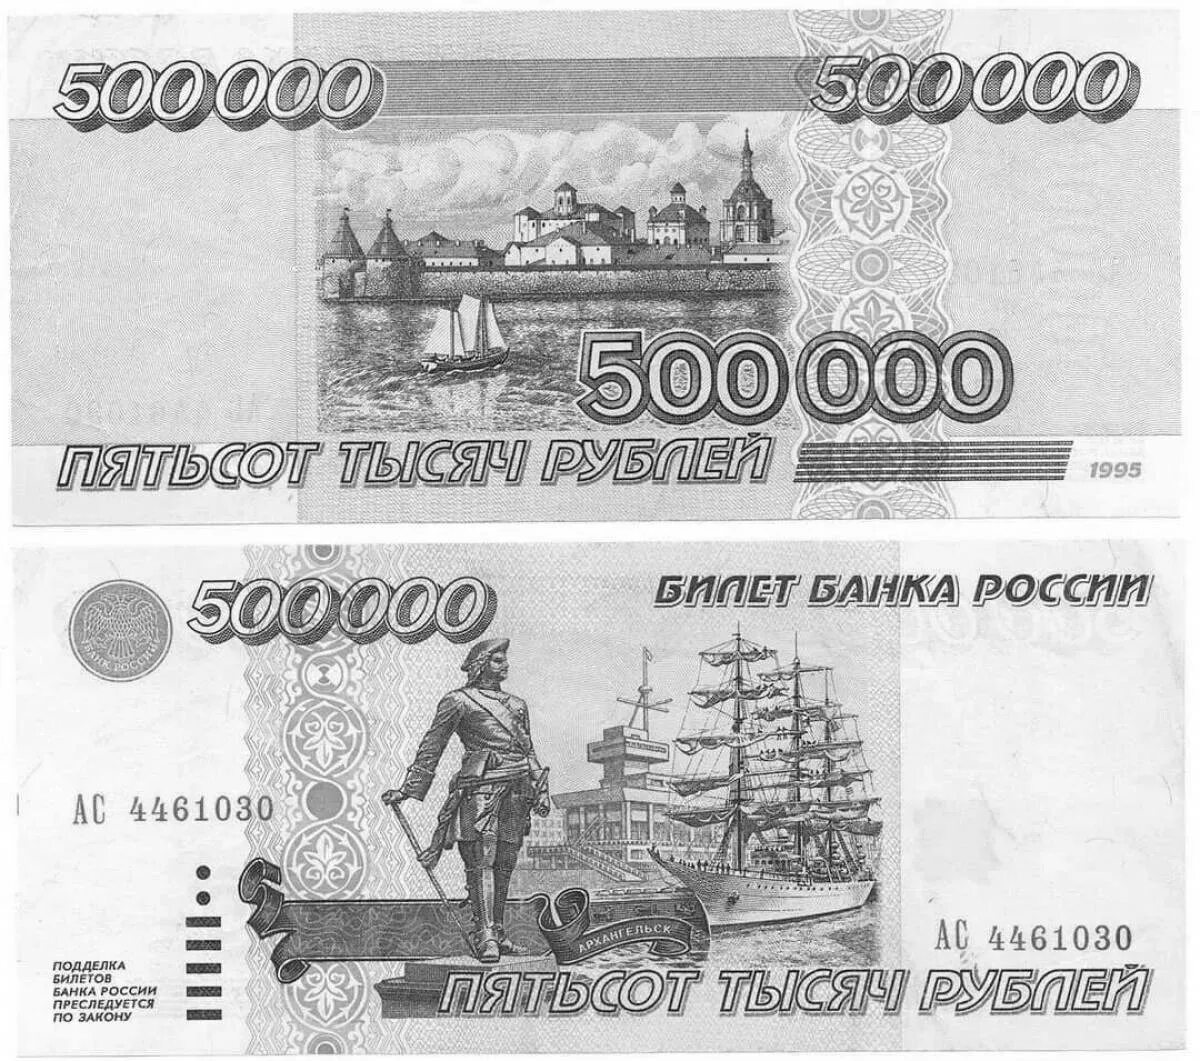 500 000 Рублей 1995. Купюра 500 000 рублей 1995 года. 500 000 Рублей 1995 года. 500 000 Рублей купюра. Миллион пятьсот пятьдесят